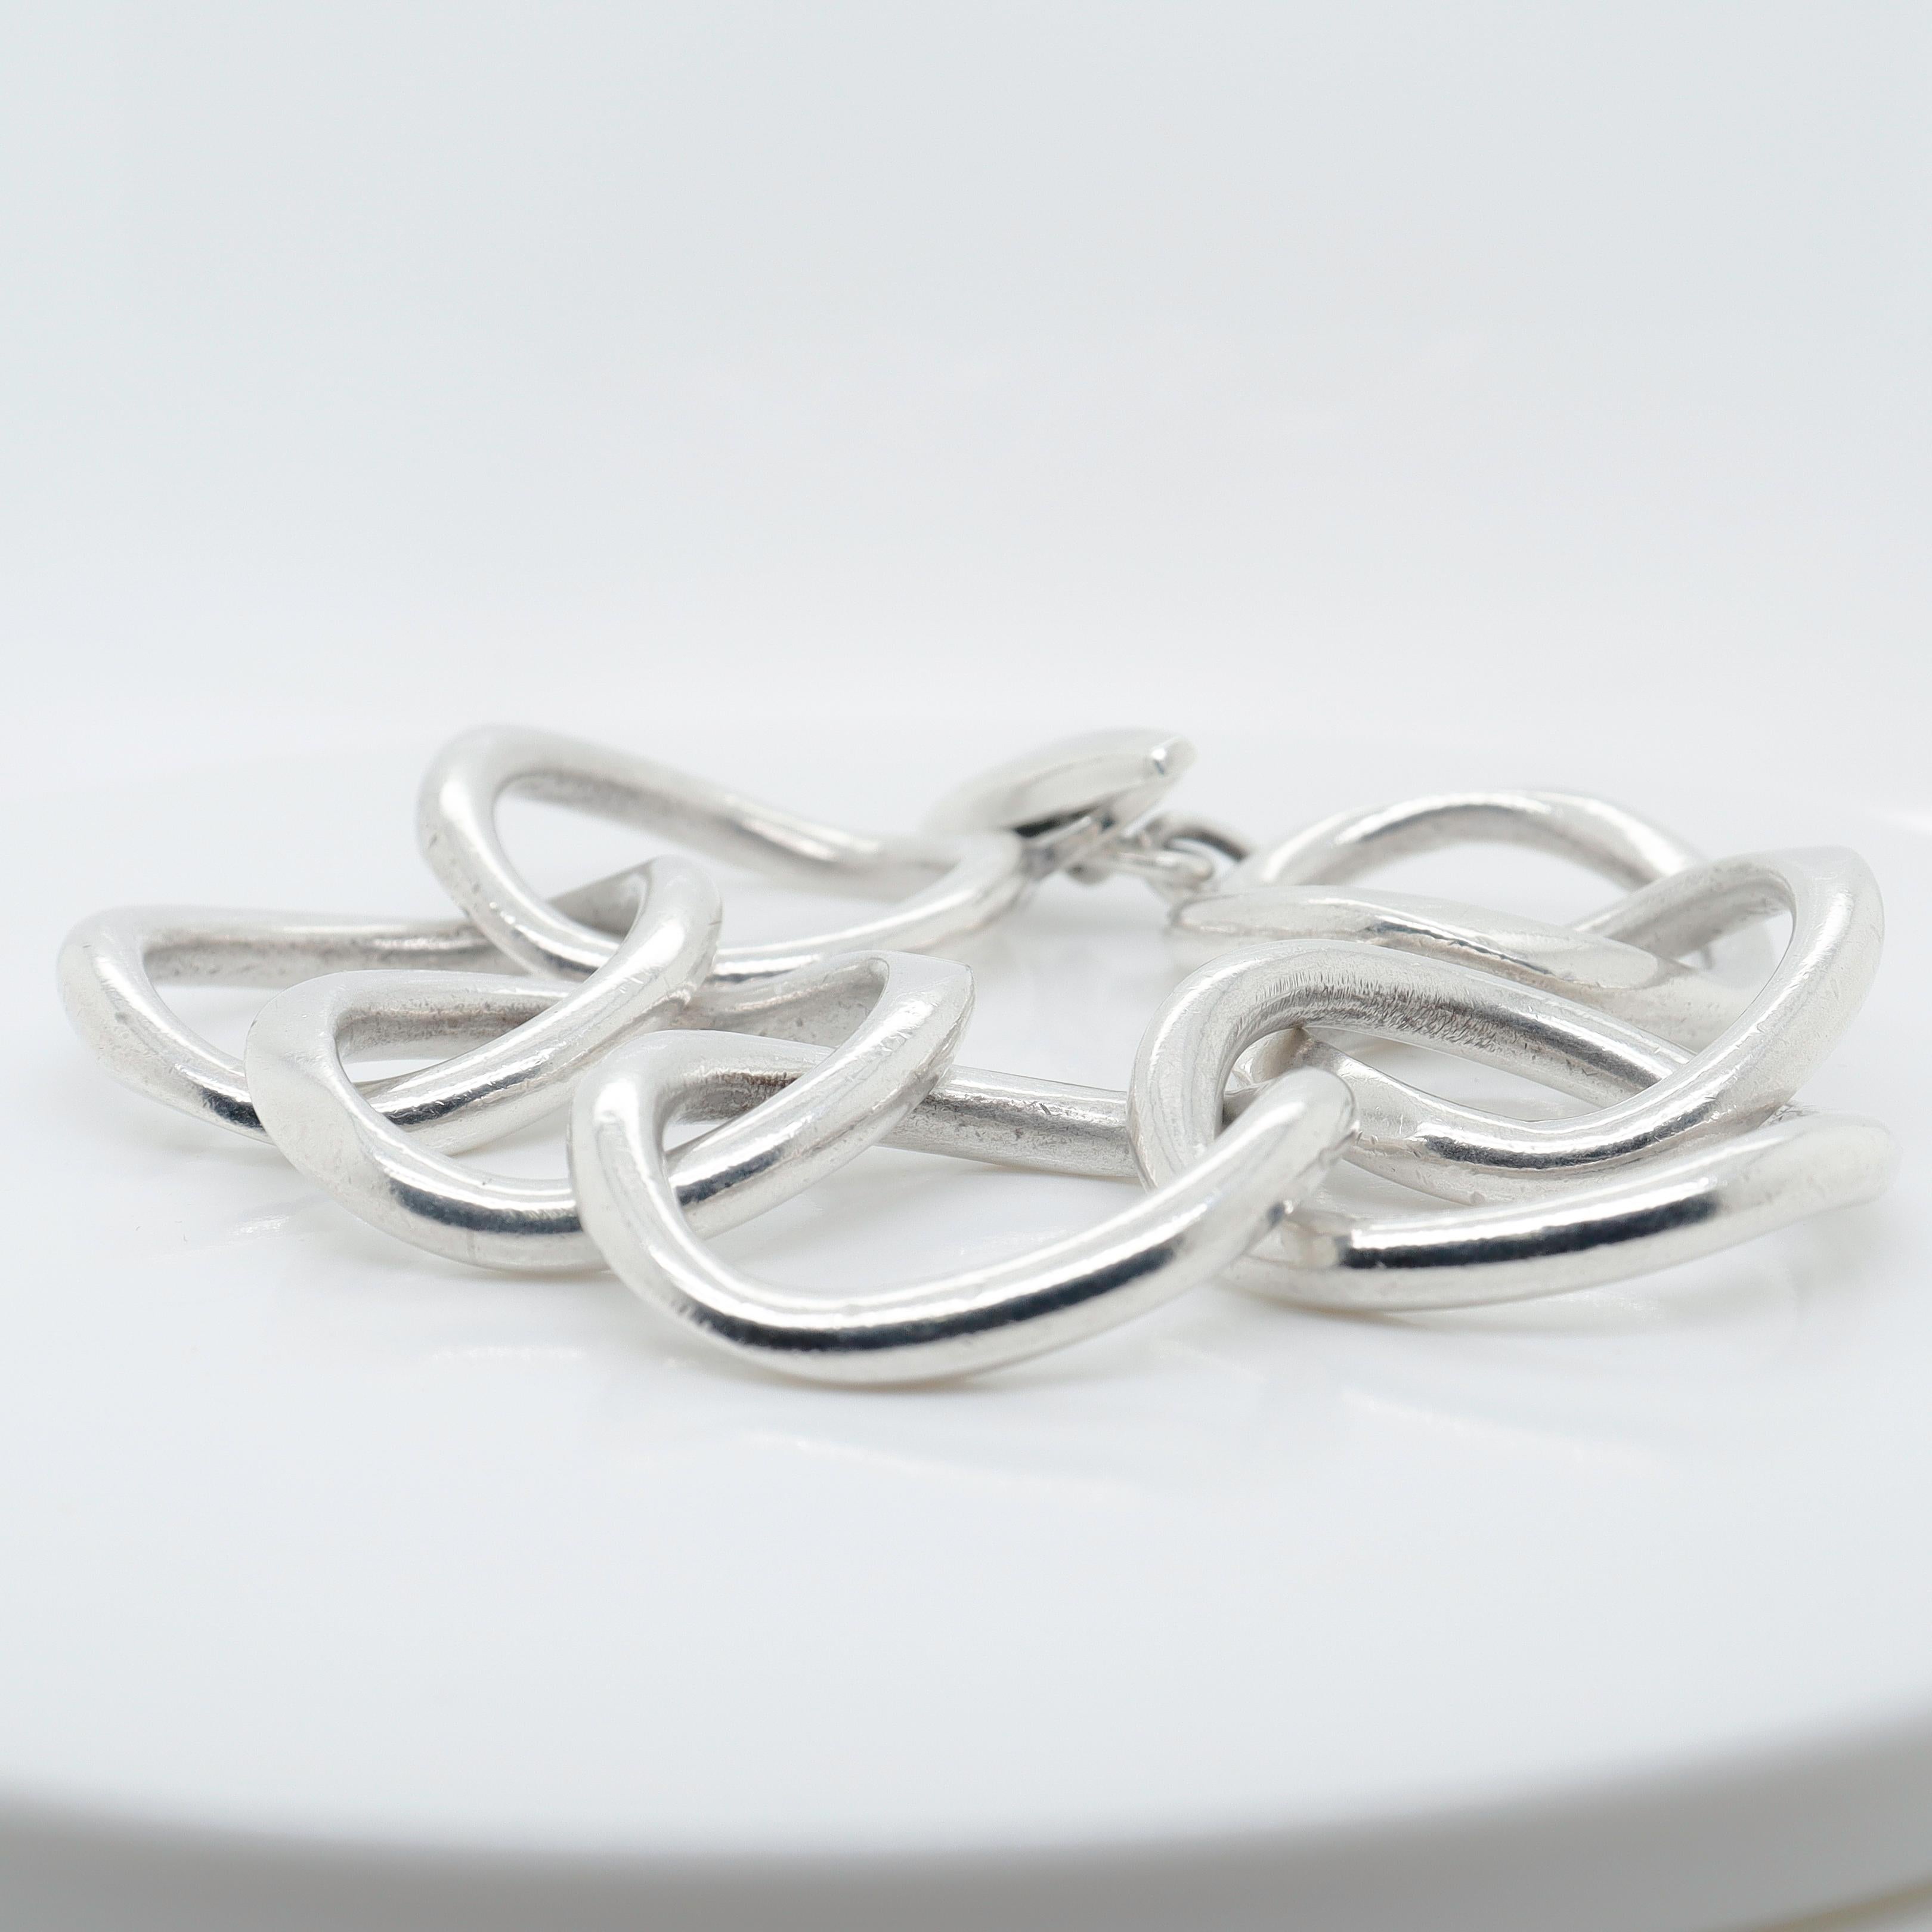 Signed Handmade Danish Modern Sterling Silver Large Link Bracelet by Randers For Sale 4